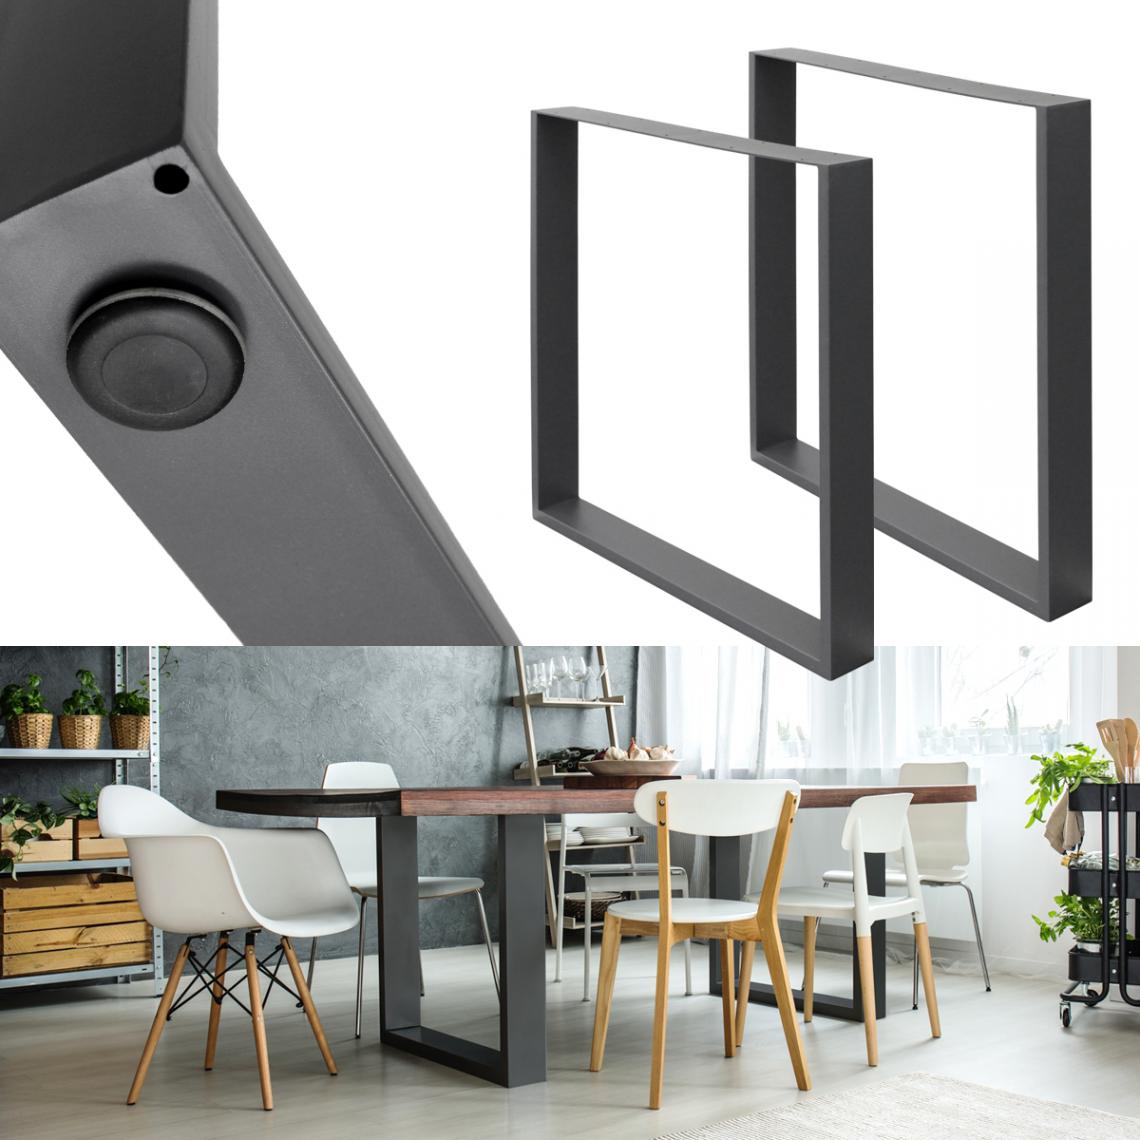 Ecd Germany - Set 2 Pieds de table industriel rectangulaire support banc meuble gris 70x72cm - Pieds & roulettes pour meuble